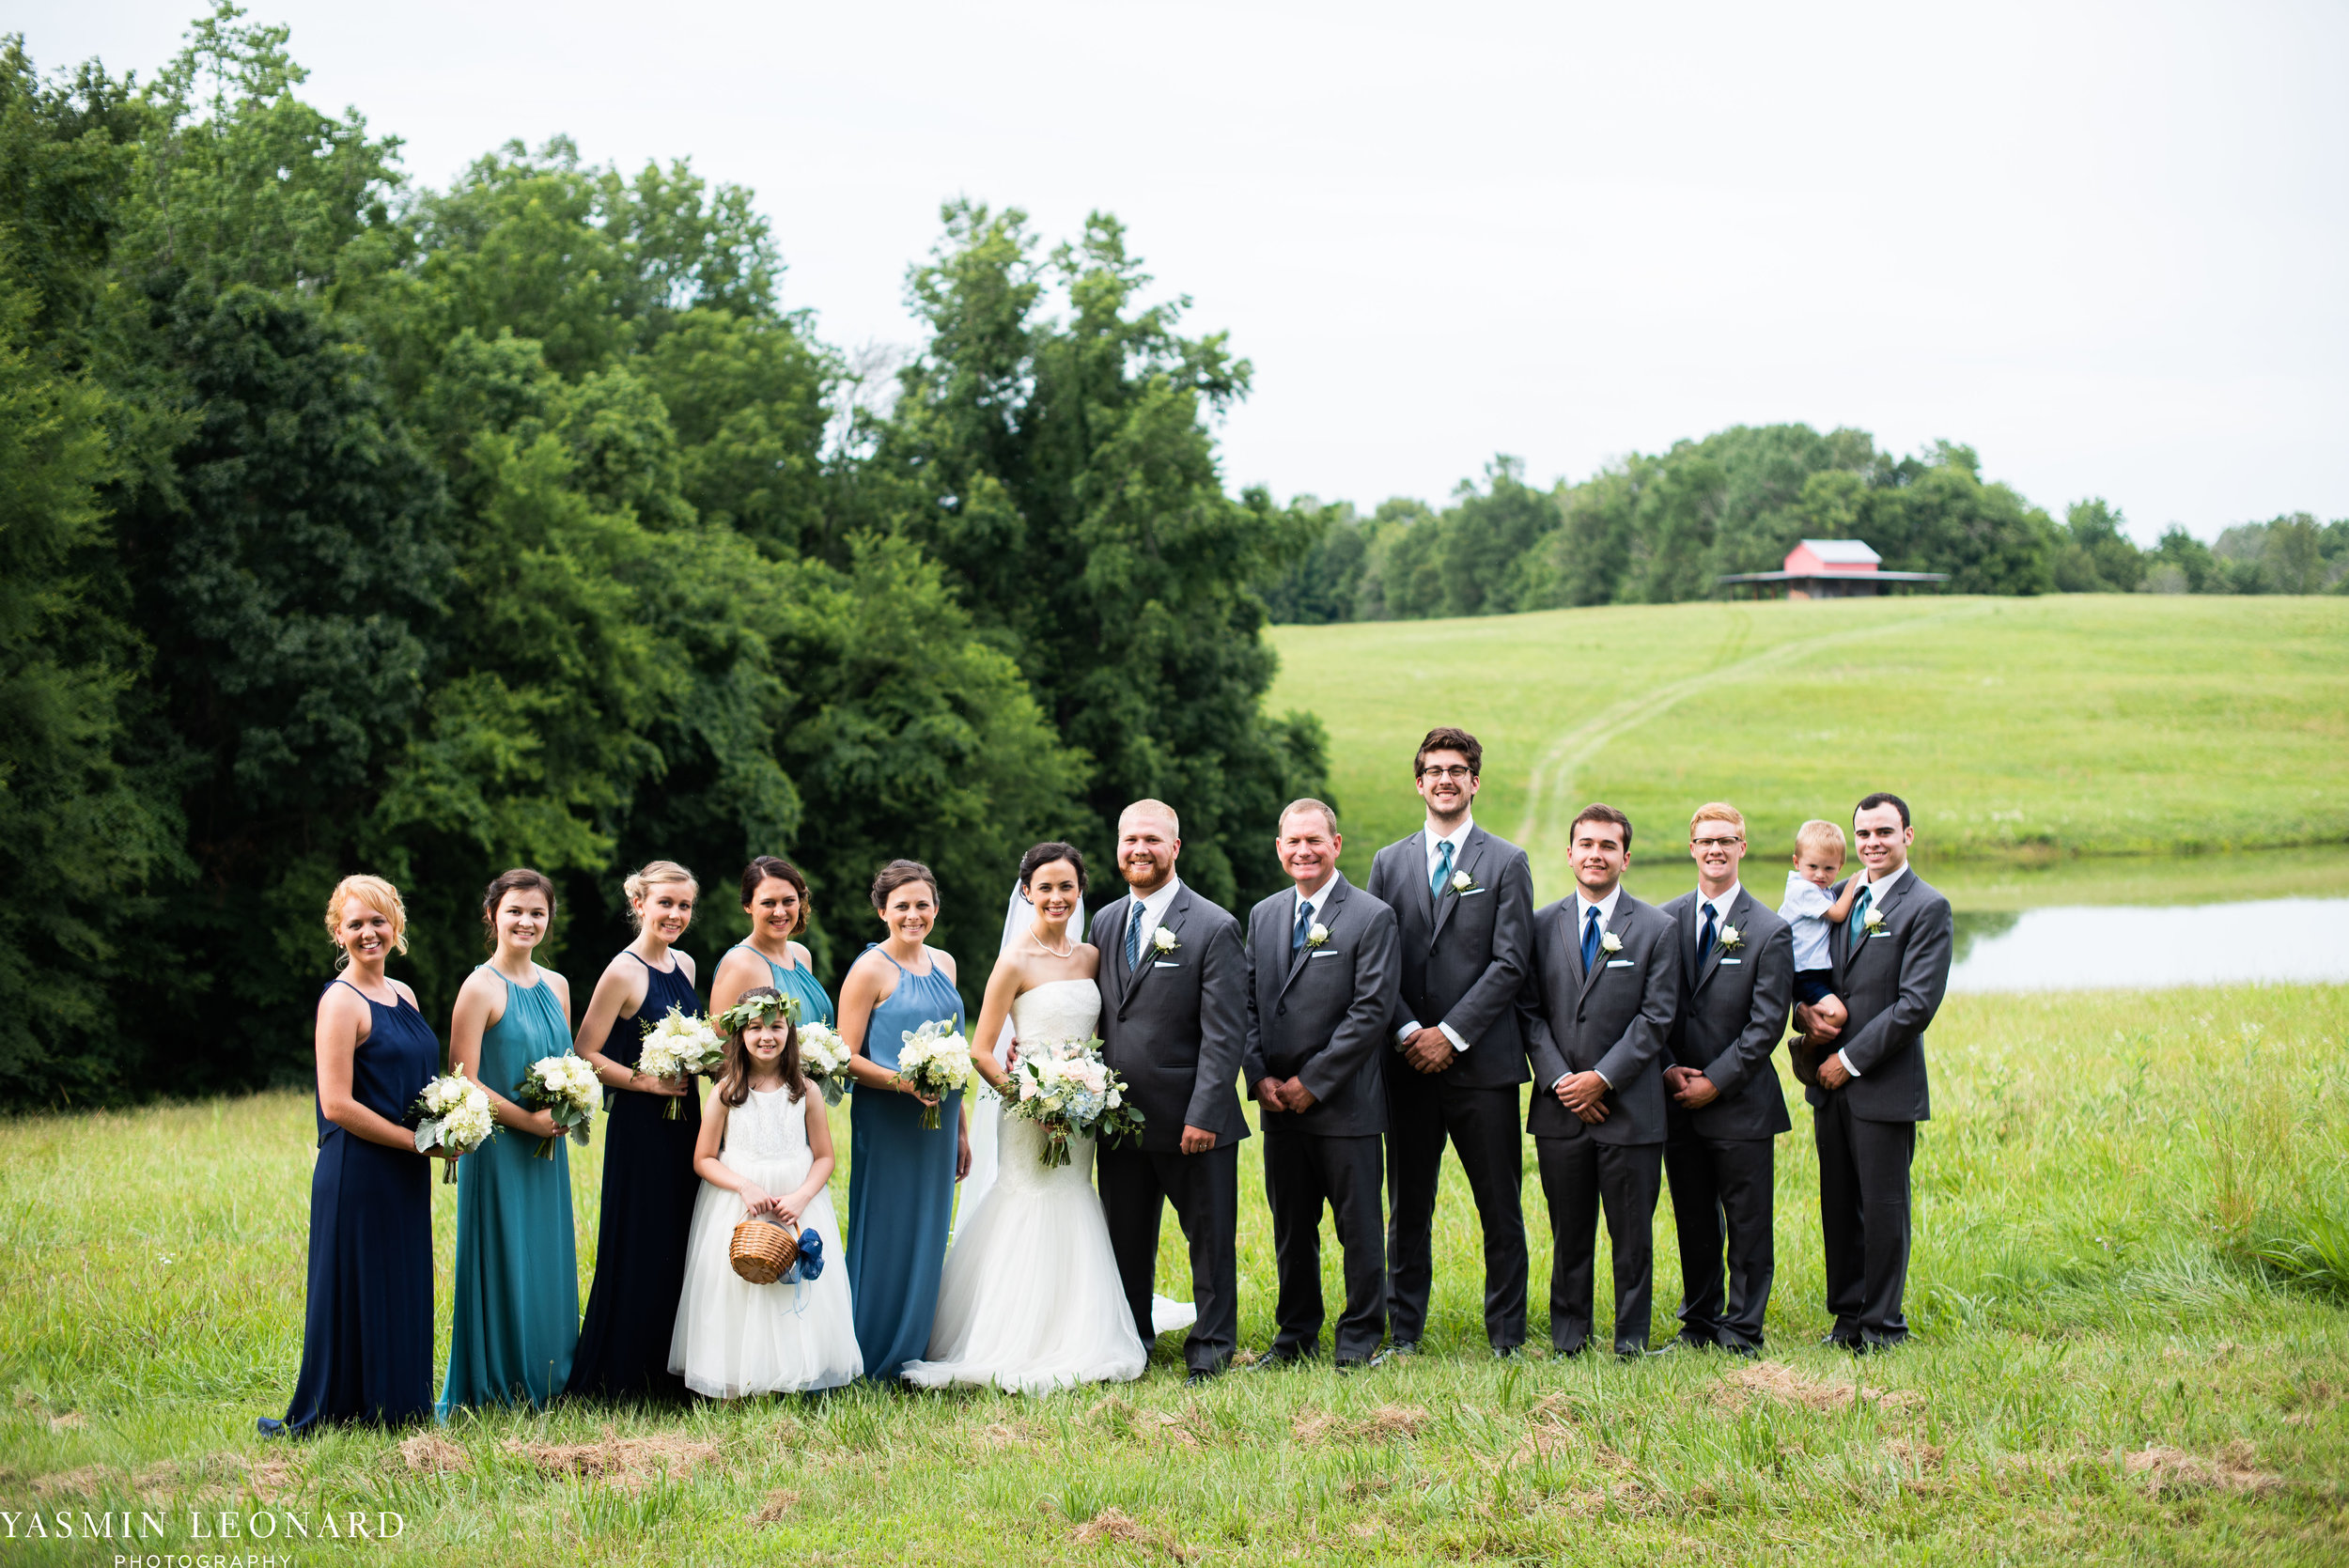 Mt. Pleasant Church - Church Wedding - Traditional Wedding - Church Ceremony - Country Wedding - Godly Wedding - NC Wedding Photographer - High Point Weddings - Triad Weddings - NC Venues-27.jpg